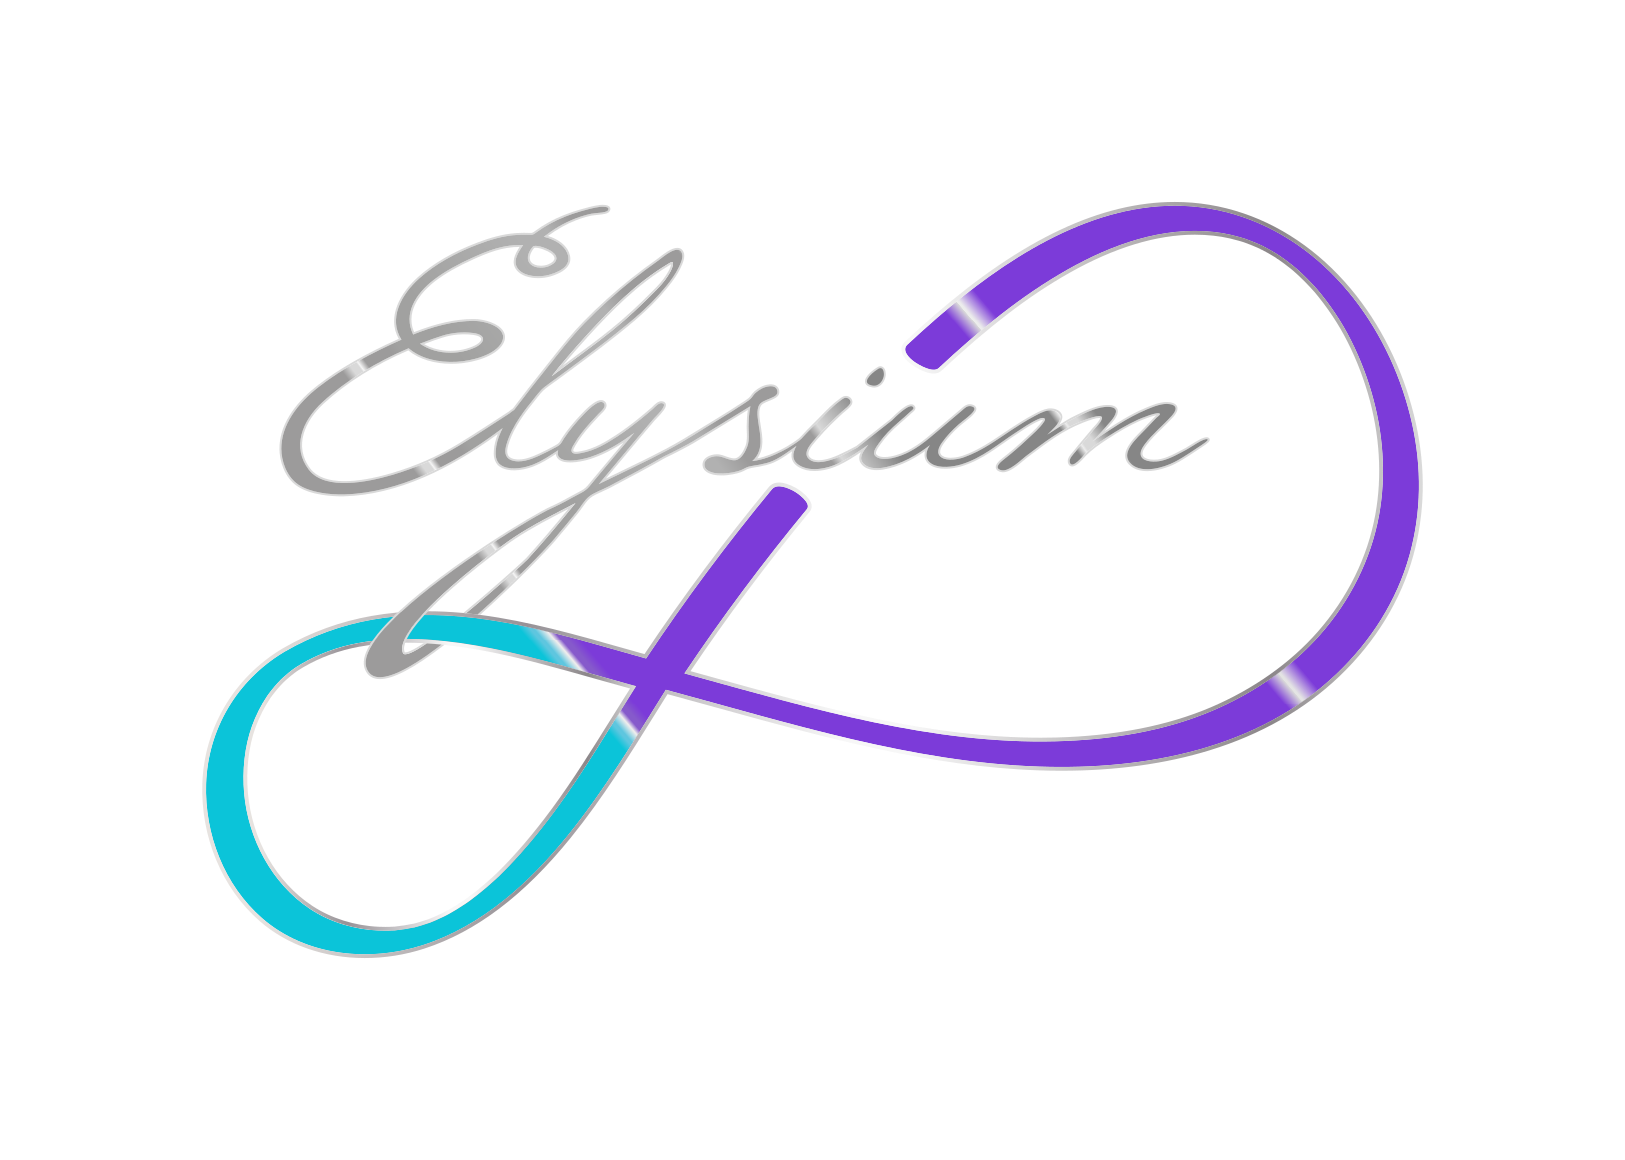 Kristályfény Elysium